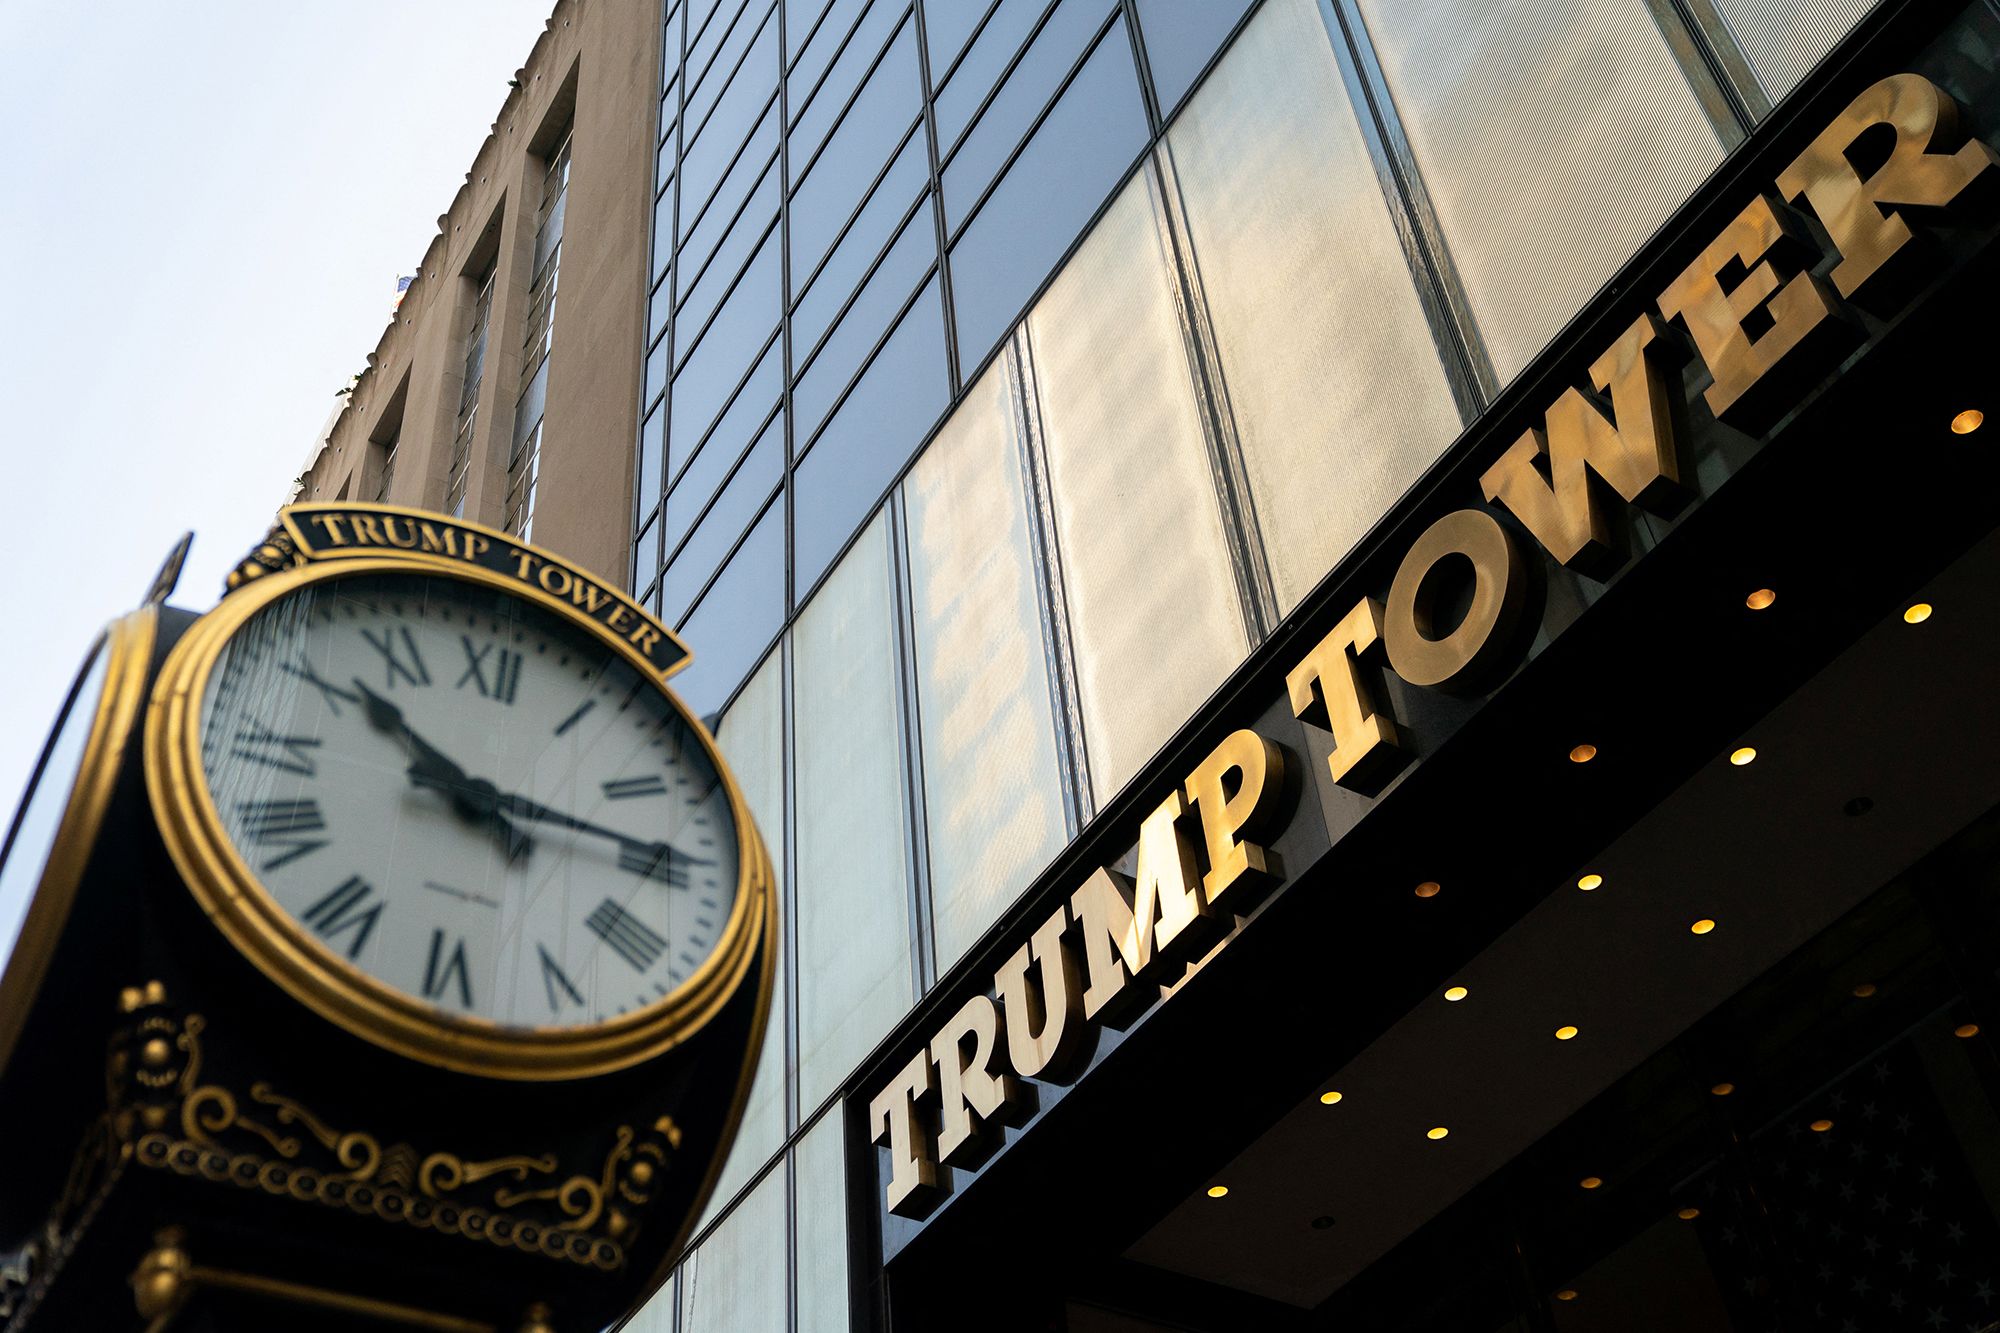 De procureur-generaal van New York zou binnenkort beslag kunnen leggen op de eigendommen van Trump